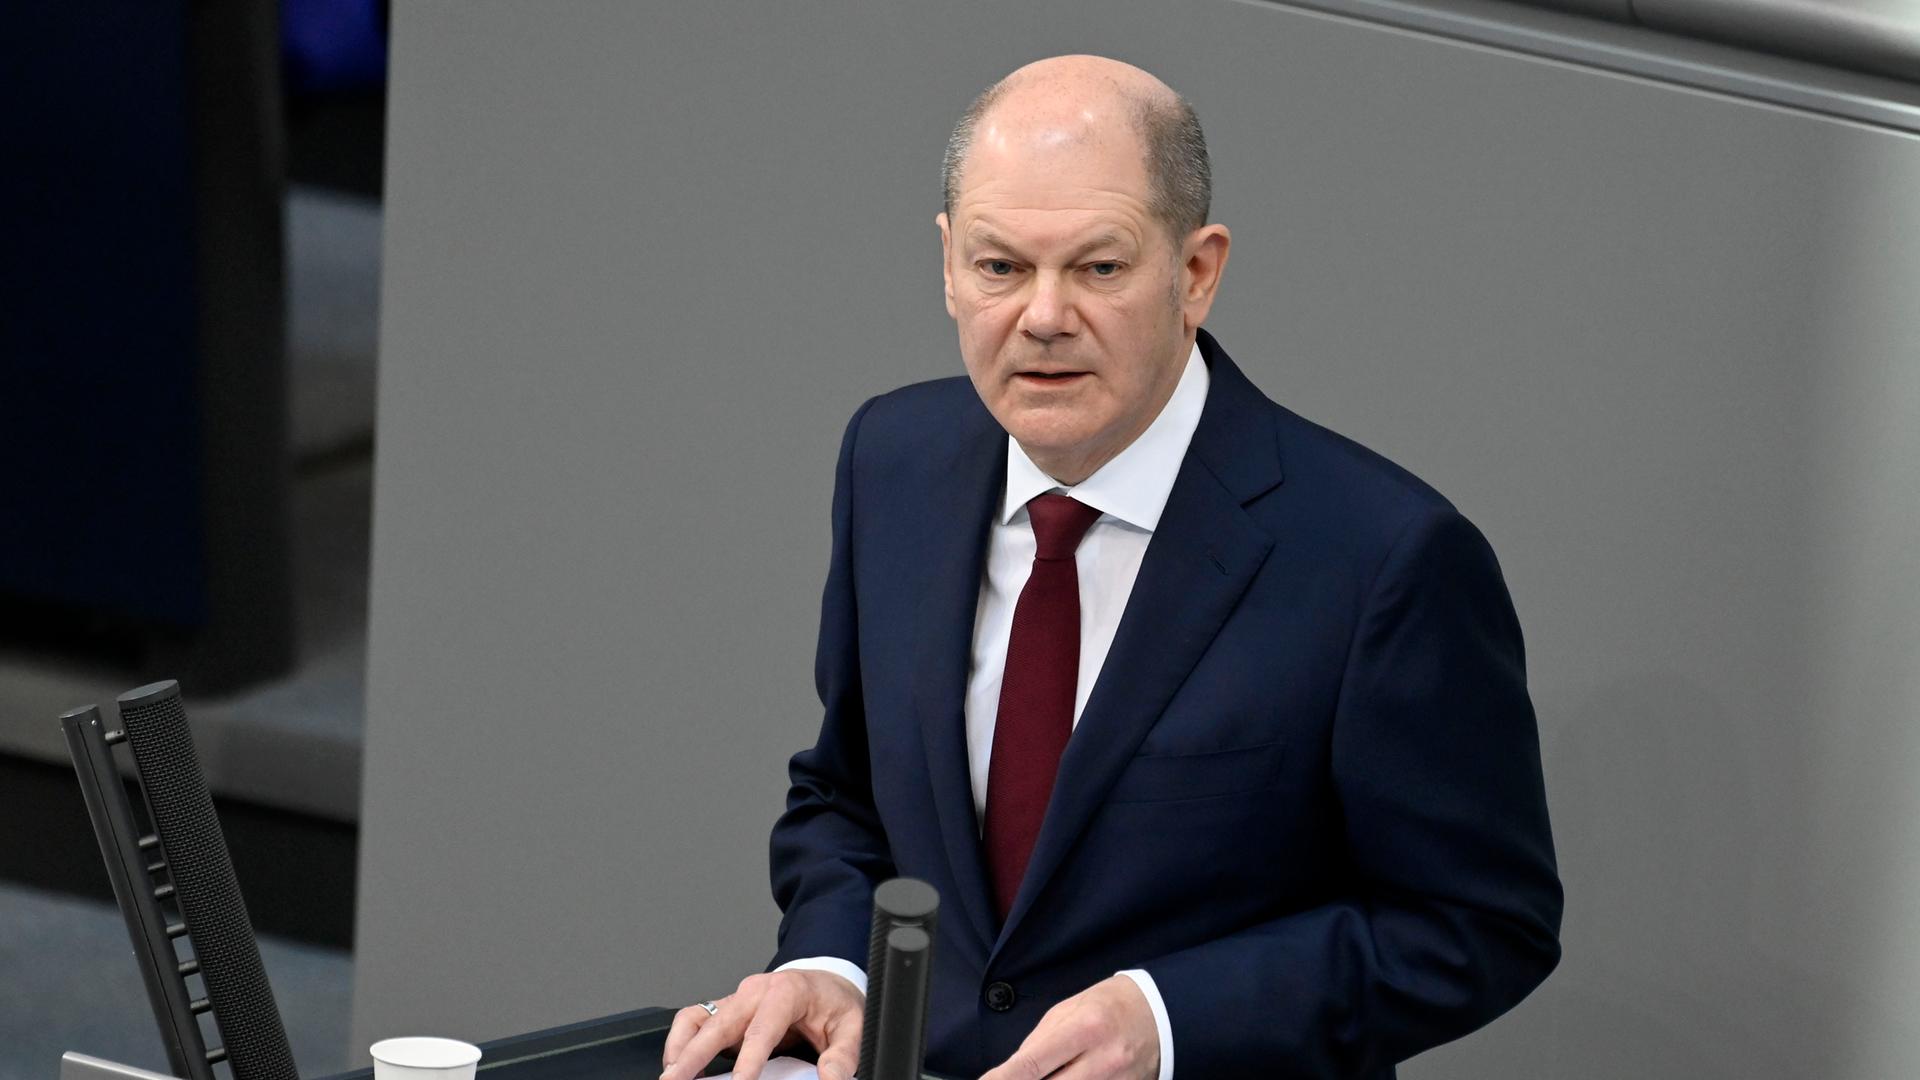 Am 27.02.2022 hielt Bundeskanzler Olaf Scholz (SPD) anlässlich der russischen Invasion in der Ukraine eine Regierungserklärung im Bundestag und sprach von "Zeitenwende". 